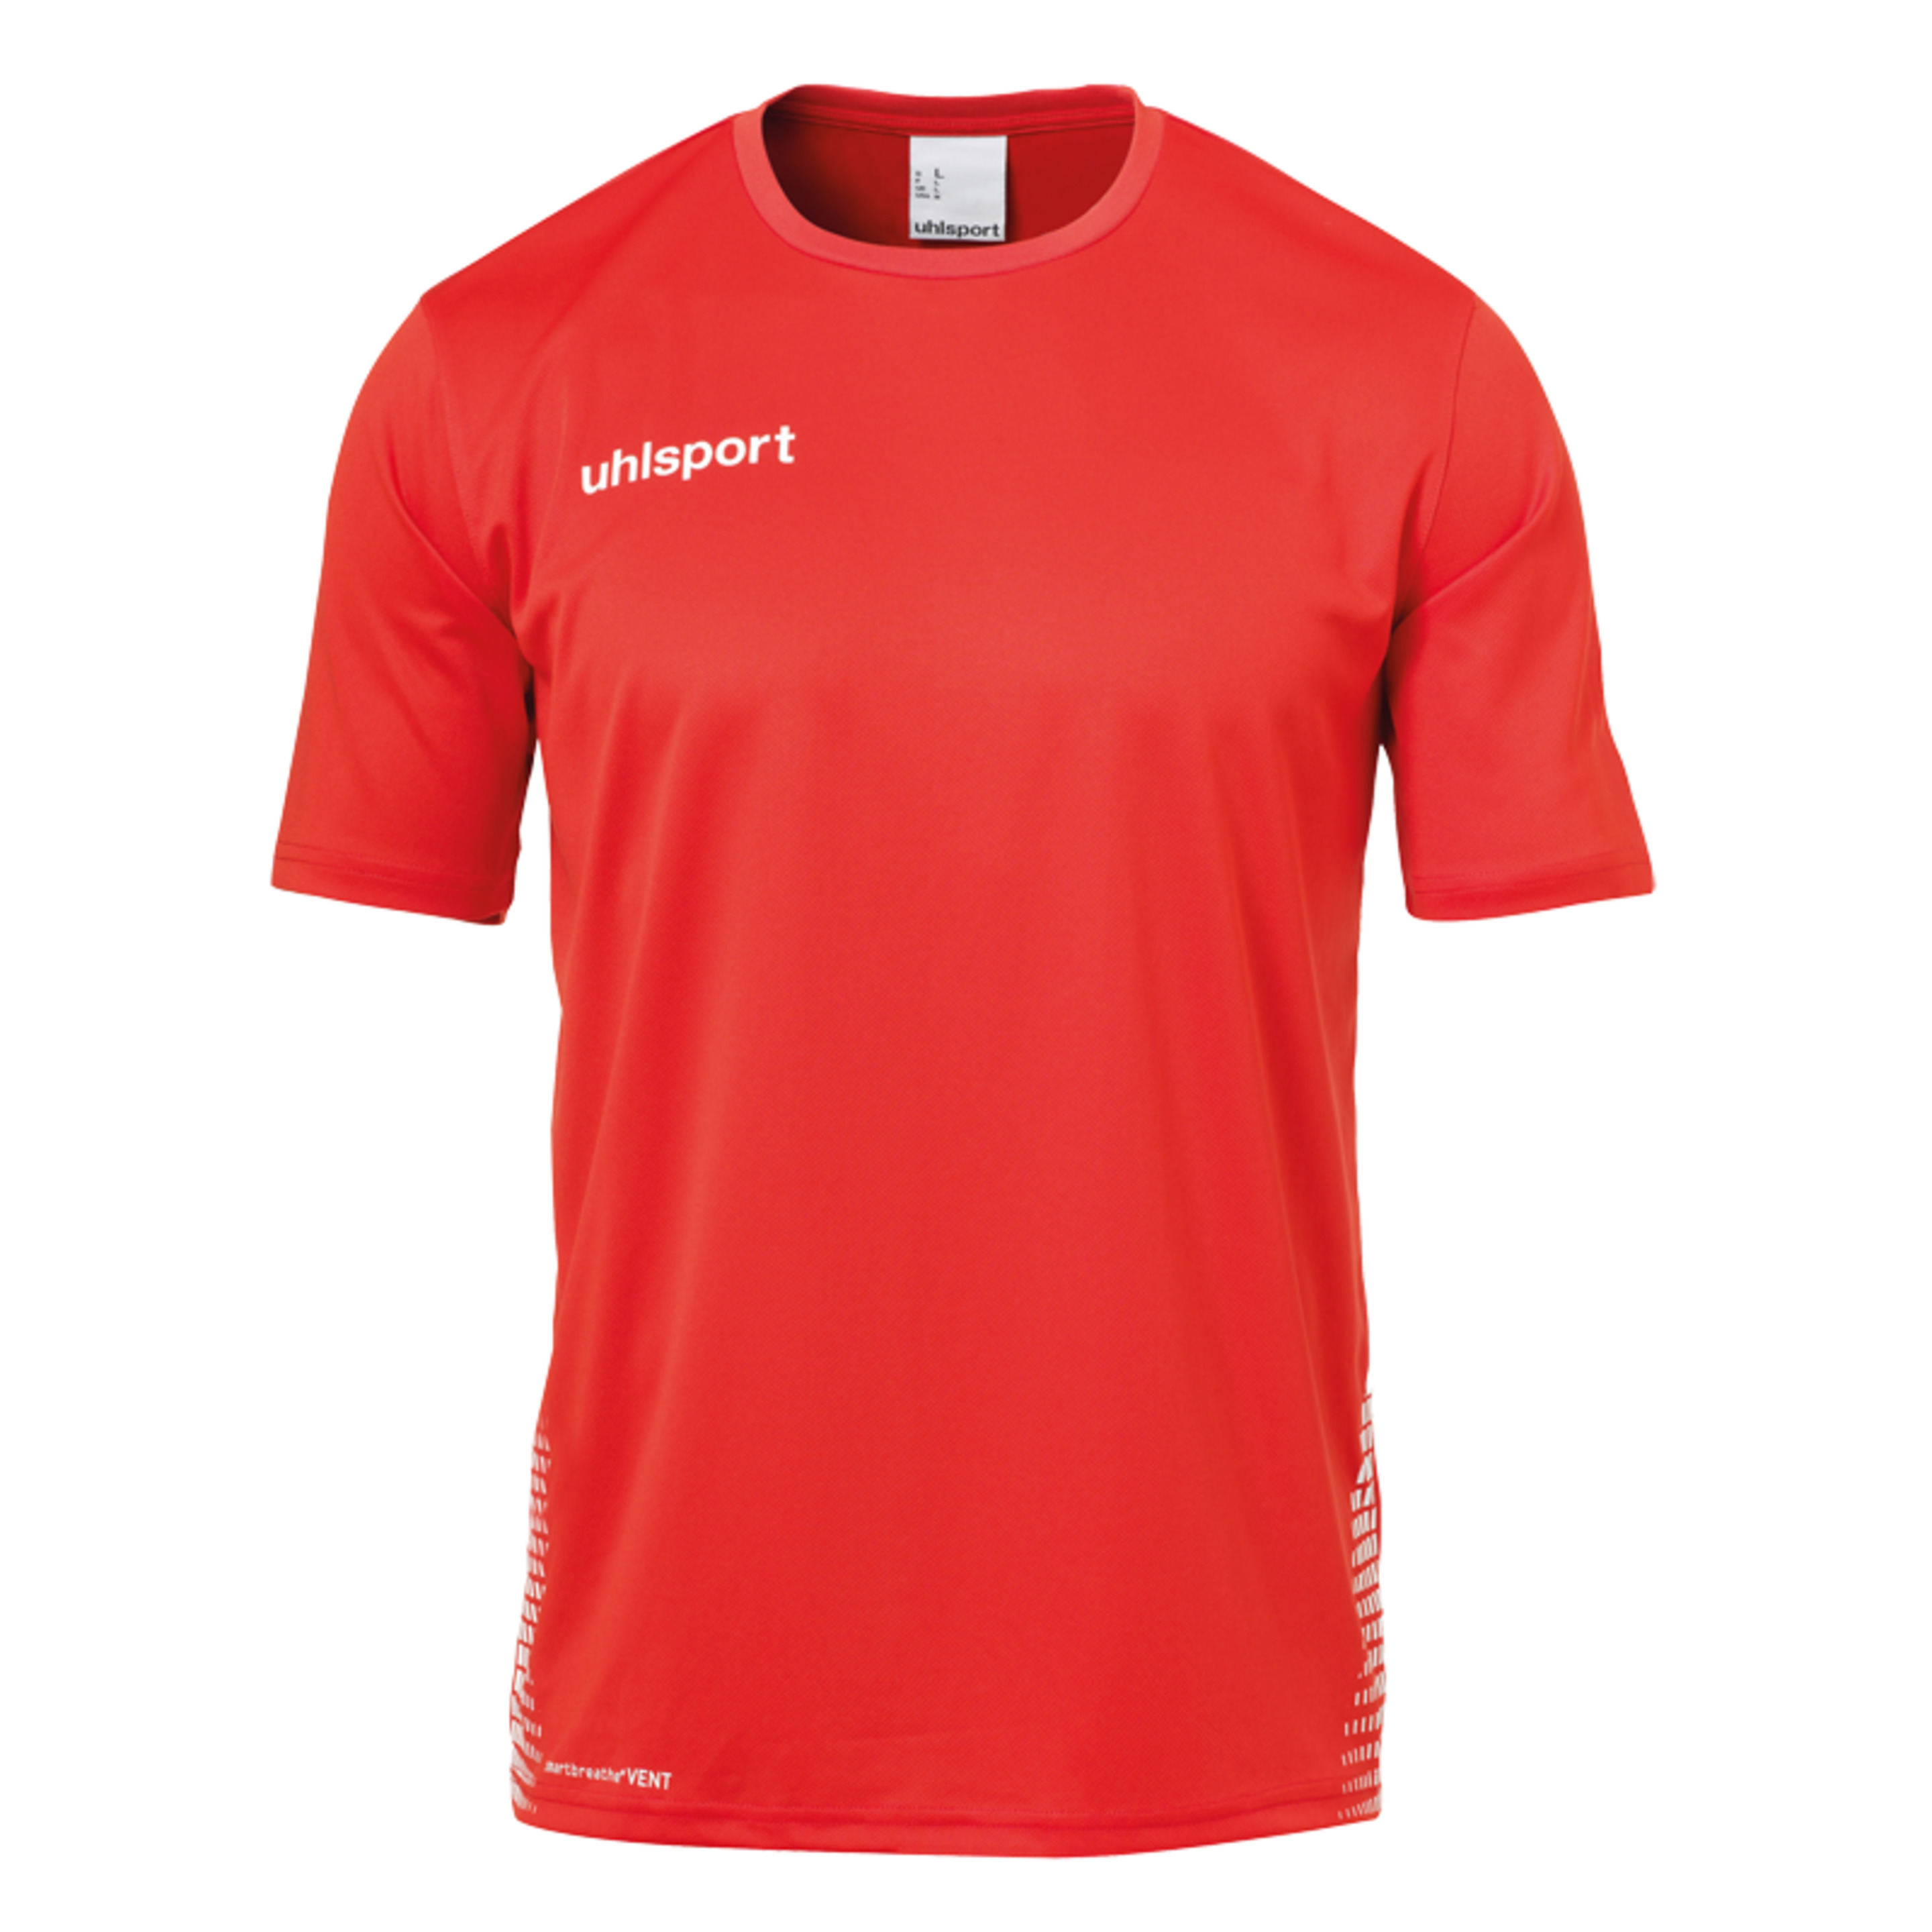 Score Training T-shirt Rojo/blanco Uhlsport - blanco-rojo - 